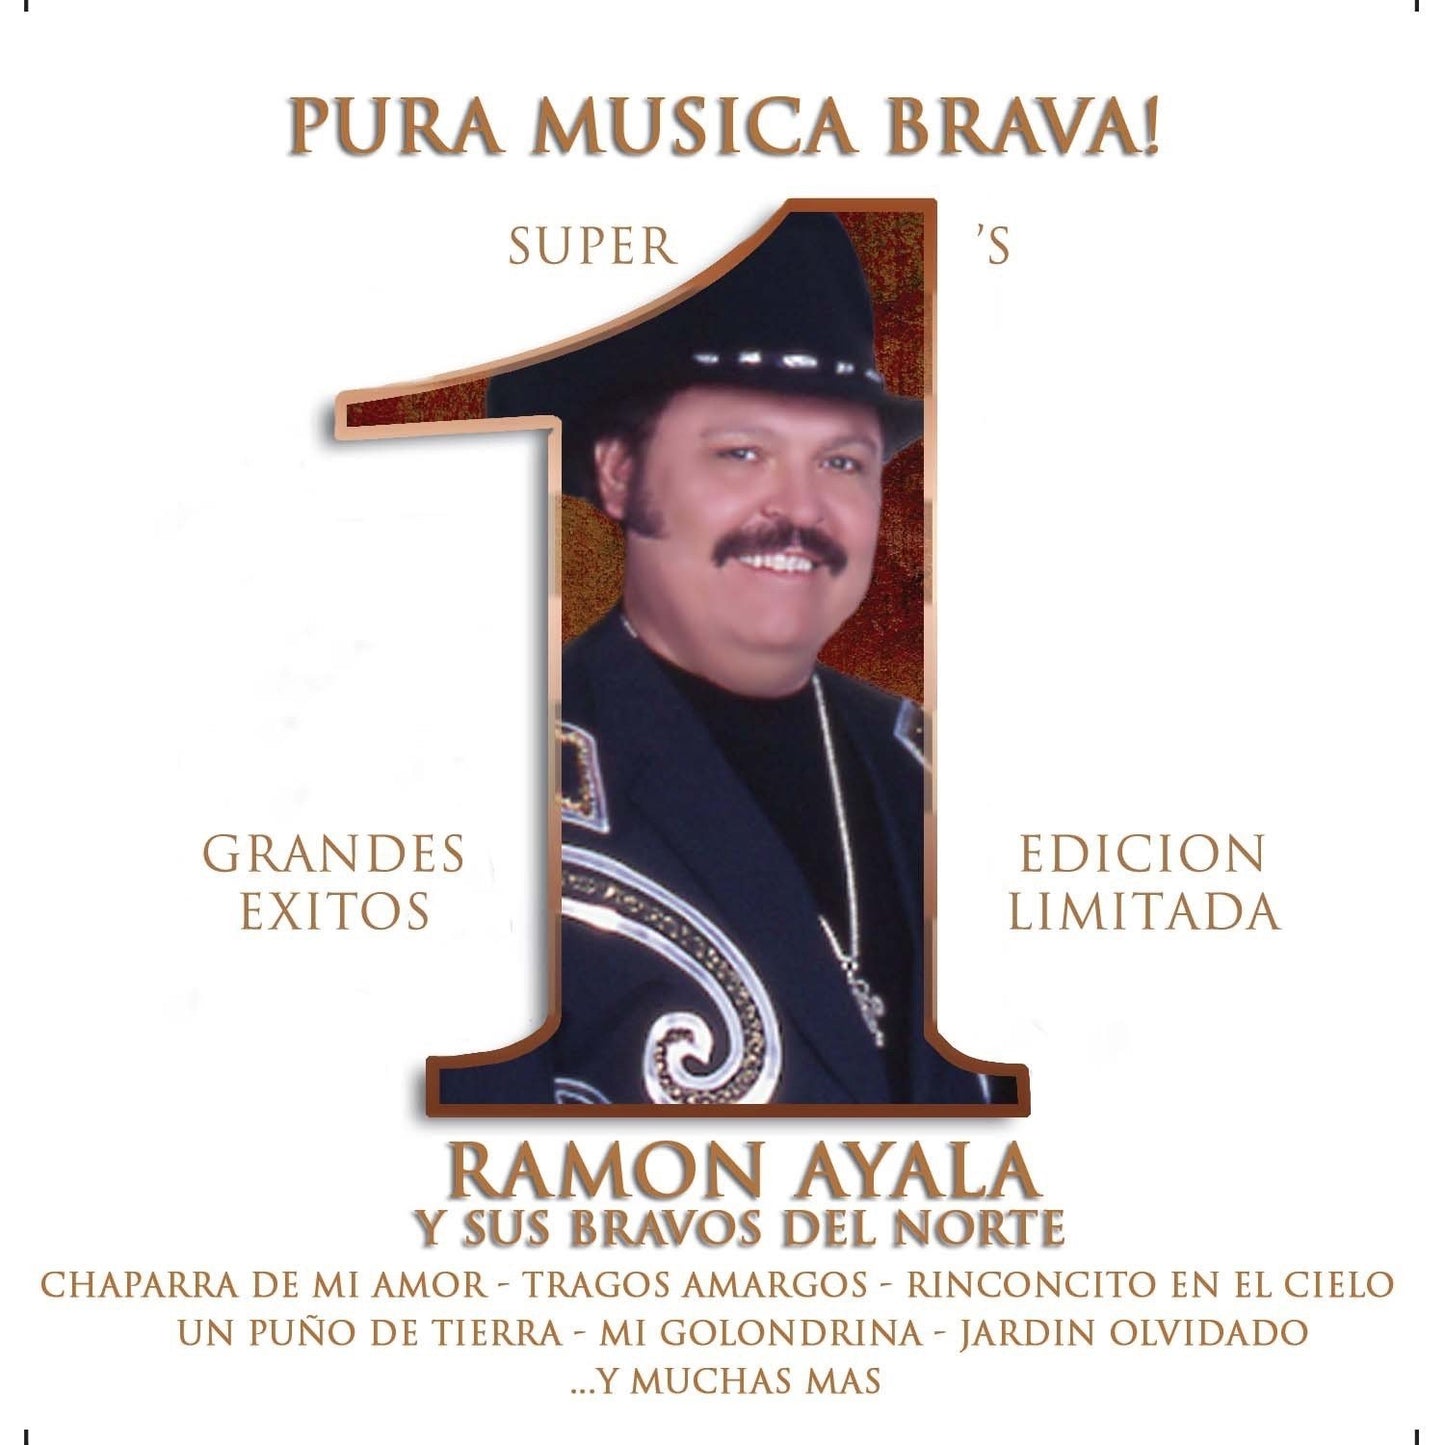 Ramon Ayala Y Sus Bravos Del Norte - Super 1's, Pura Musica Brava! (CD)